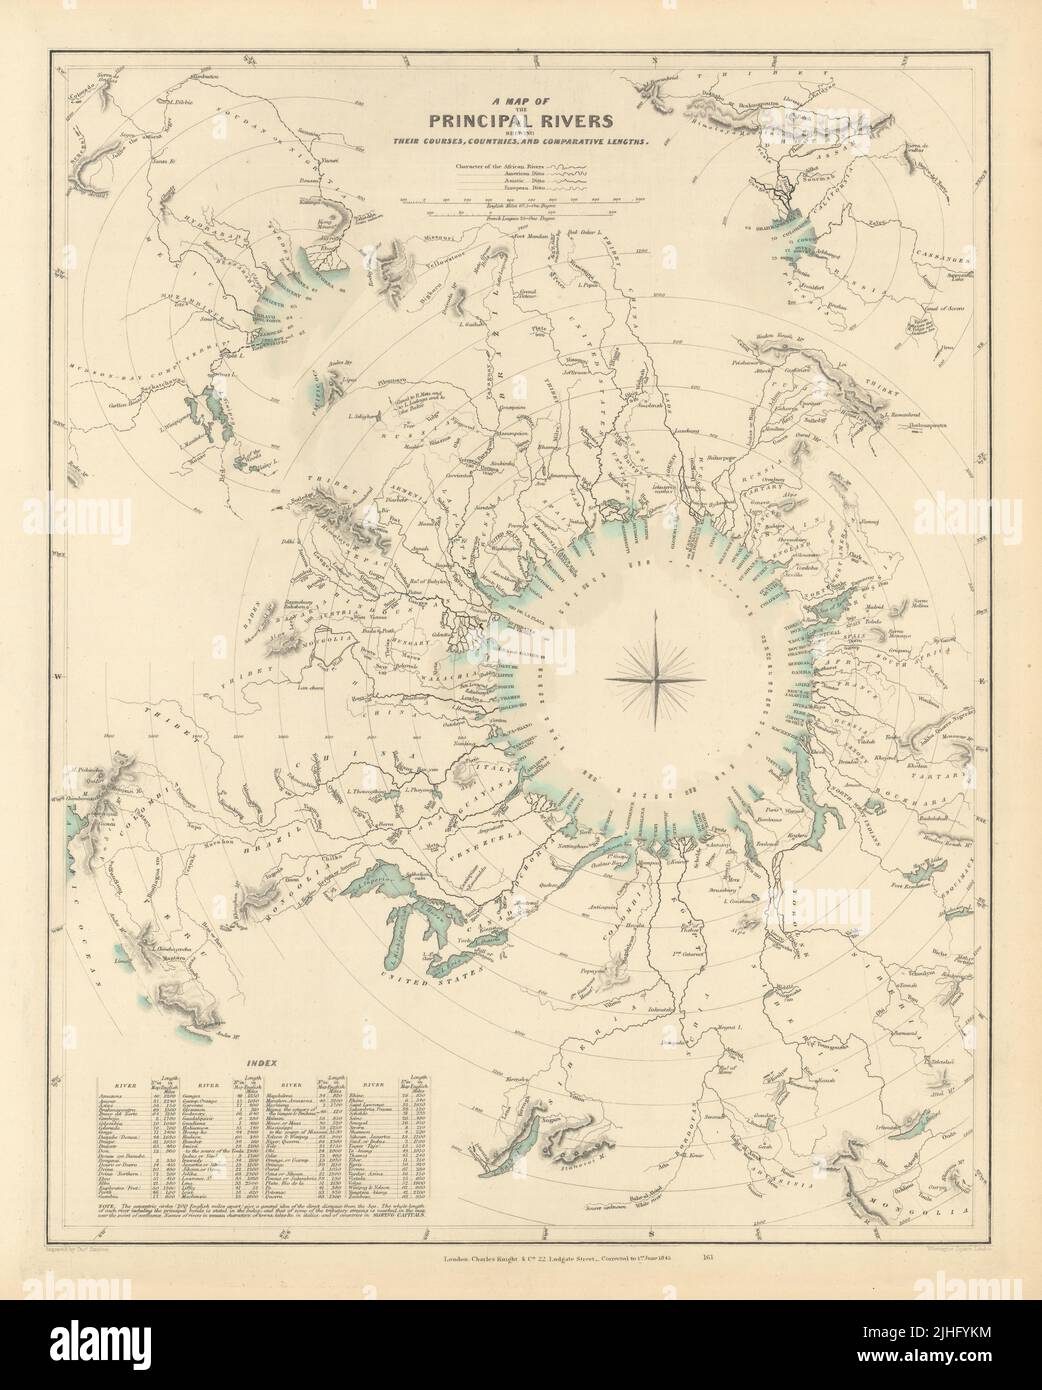 Longueurs comparatives des PRINCIPAUX FLEUVES du monde. Pays. Carte SDUK 1851 Banque D'Images